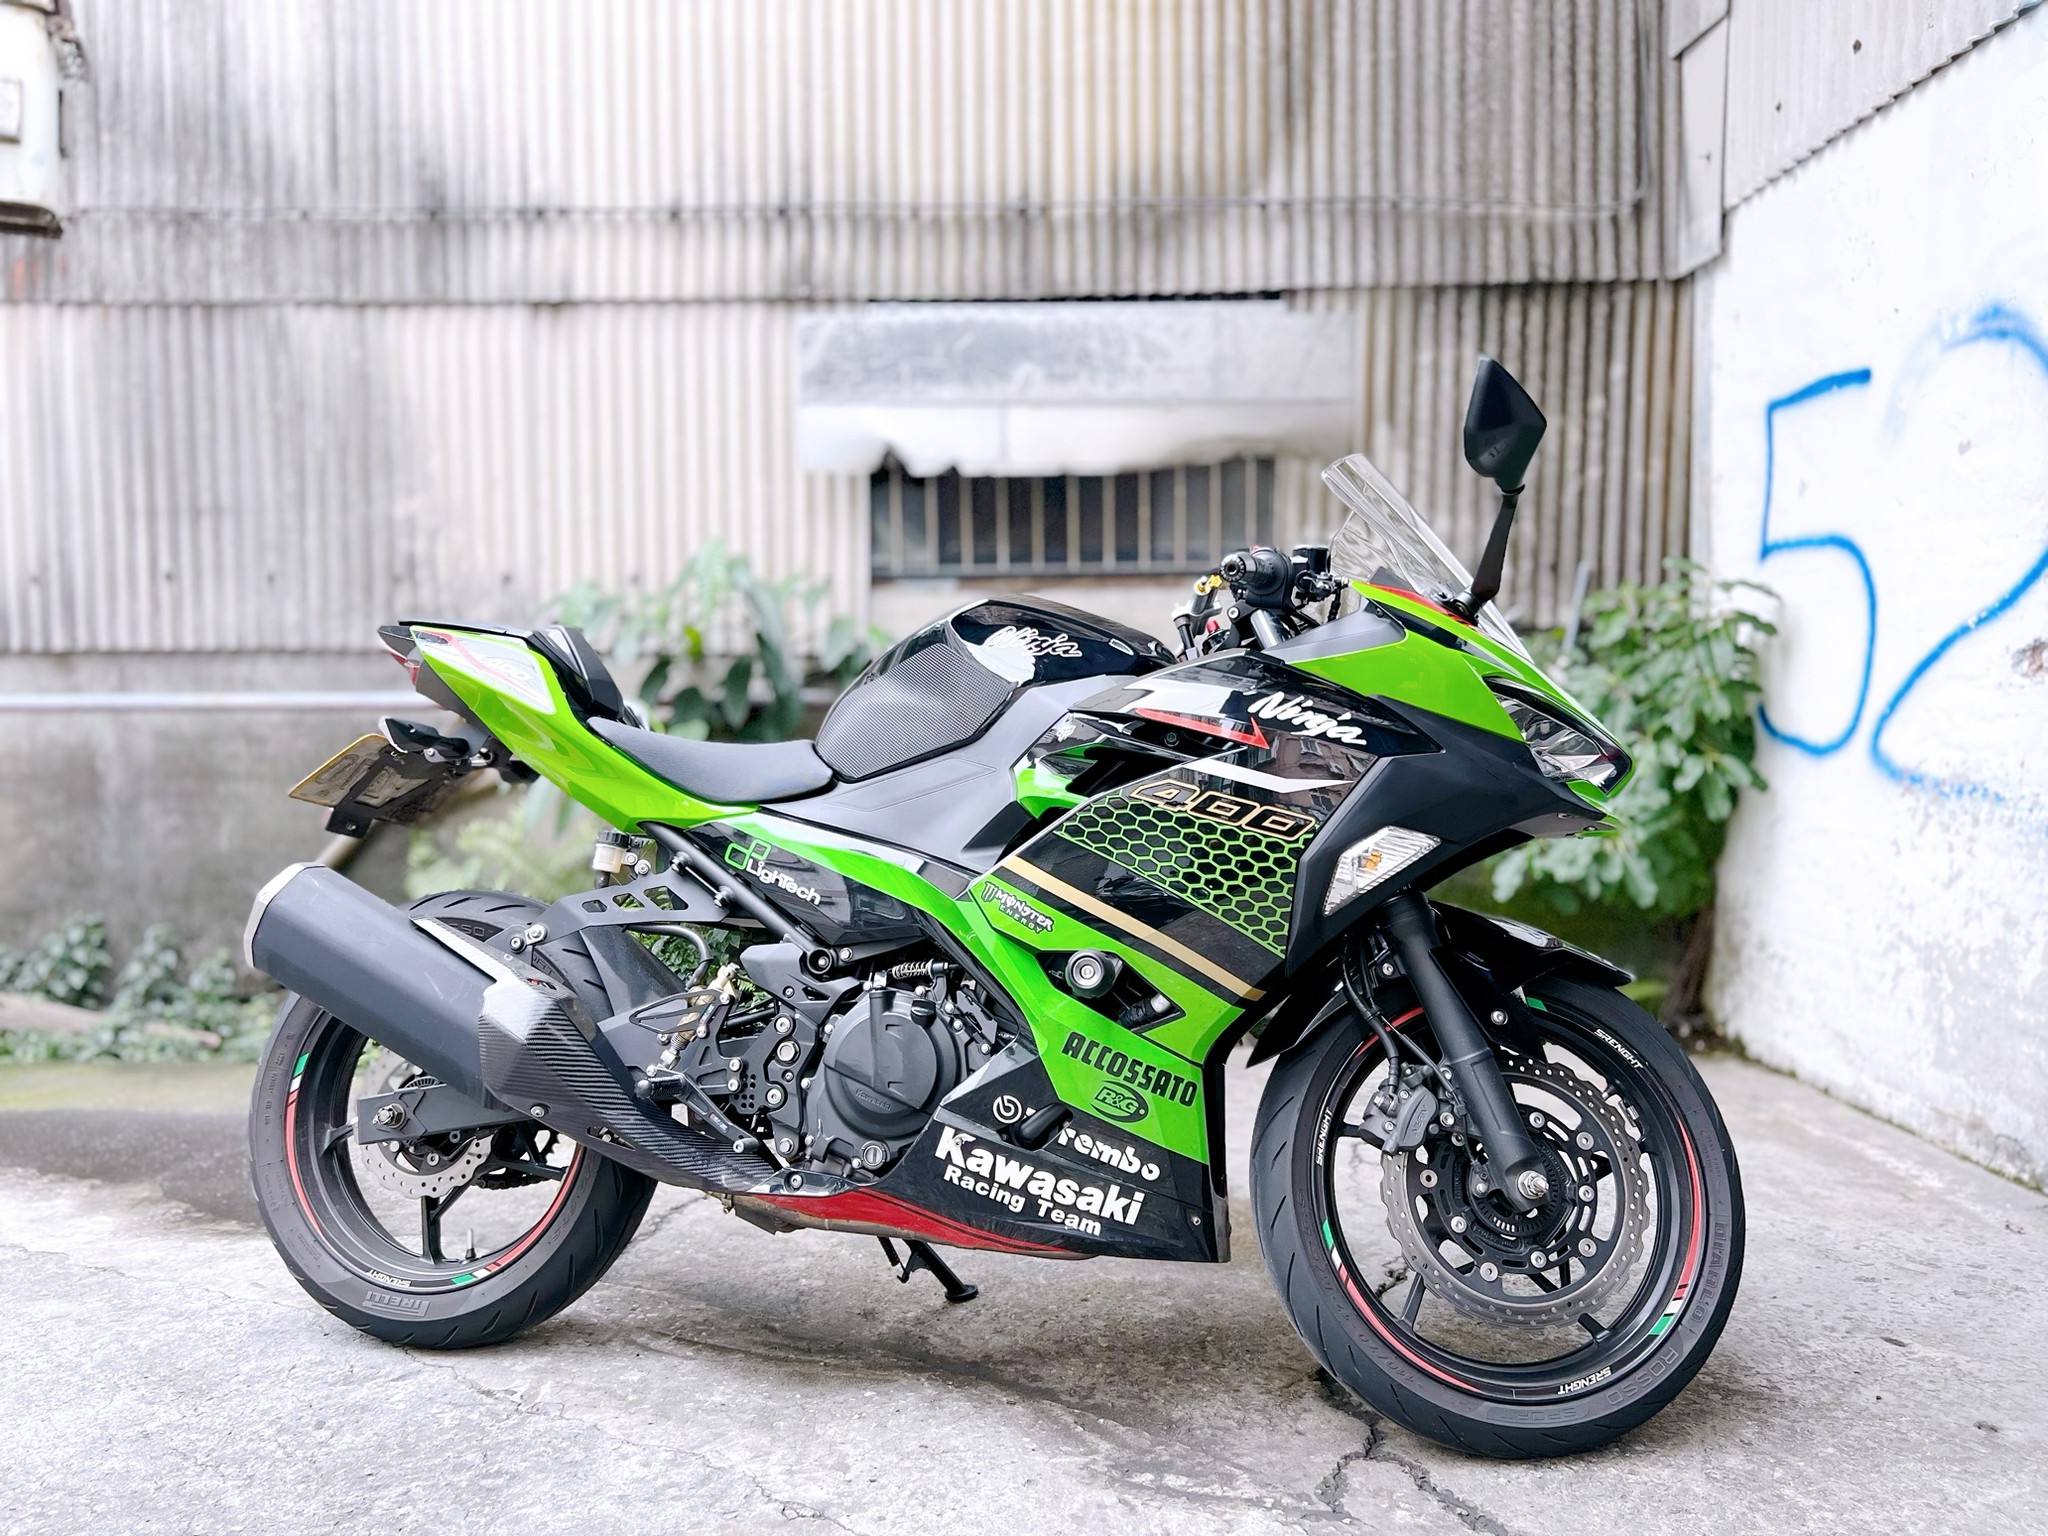 KAWASAKI NINJA400 - 中古/二手車出售中 Kawasaki 忍者400 ABS  協助分期 換車 托運服務。 ​Line ID:@q0984380388 | 小菜輕重機